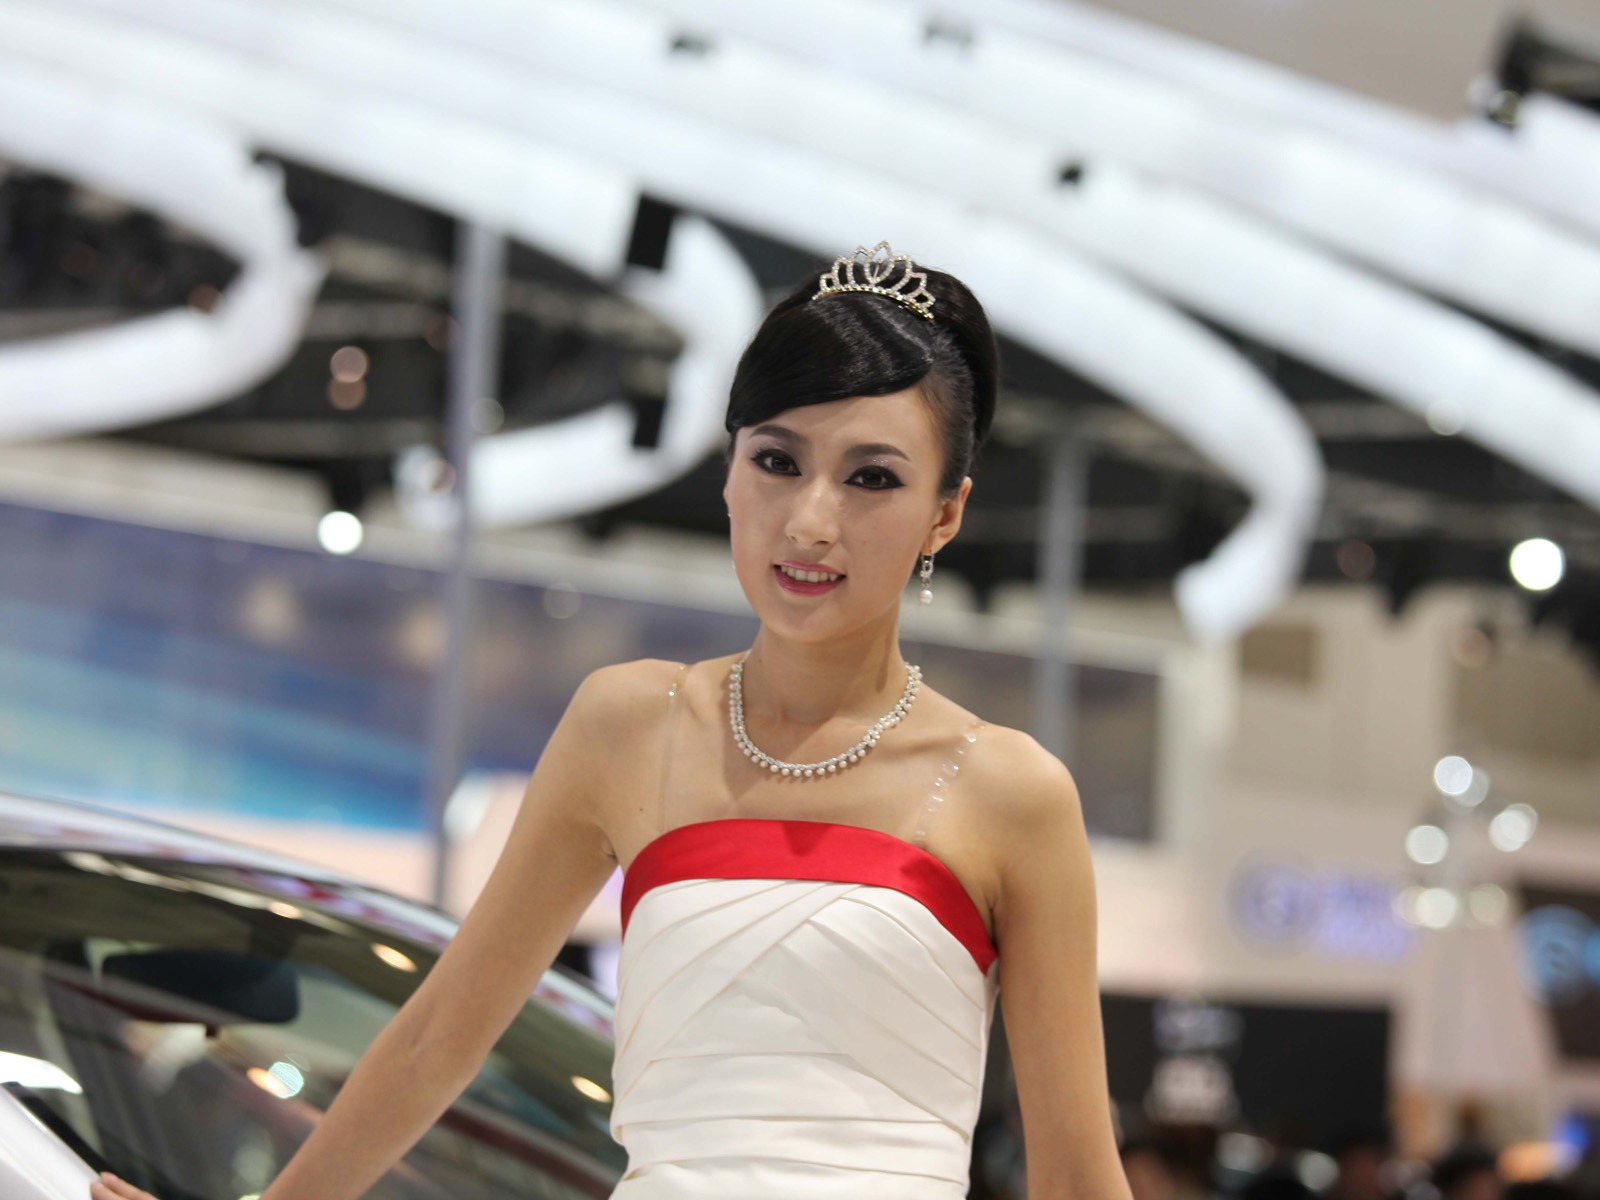 2010 v Pekingu Mezinárodním autosalonu krása (1) (vítr honí mraky práce) #27 - 1600x1200